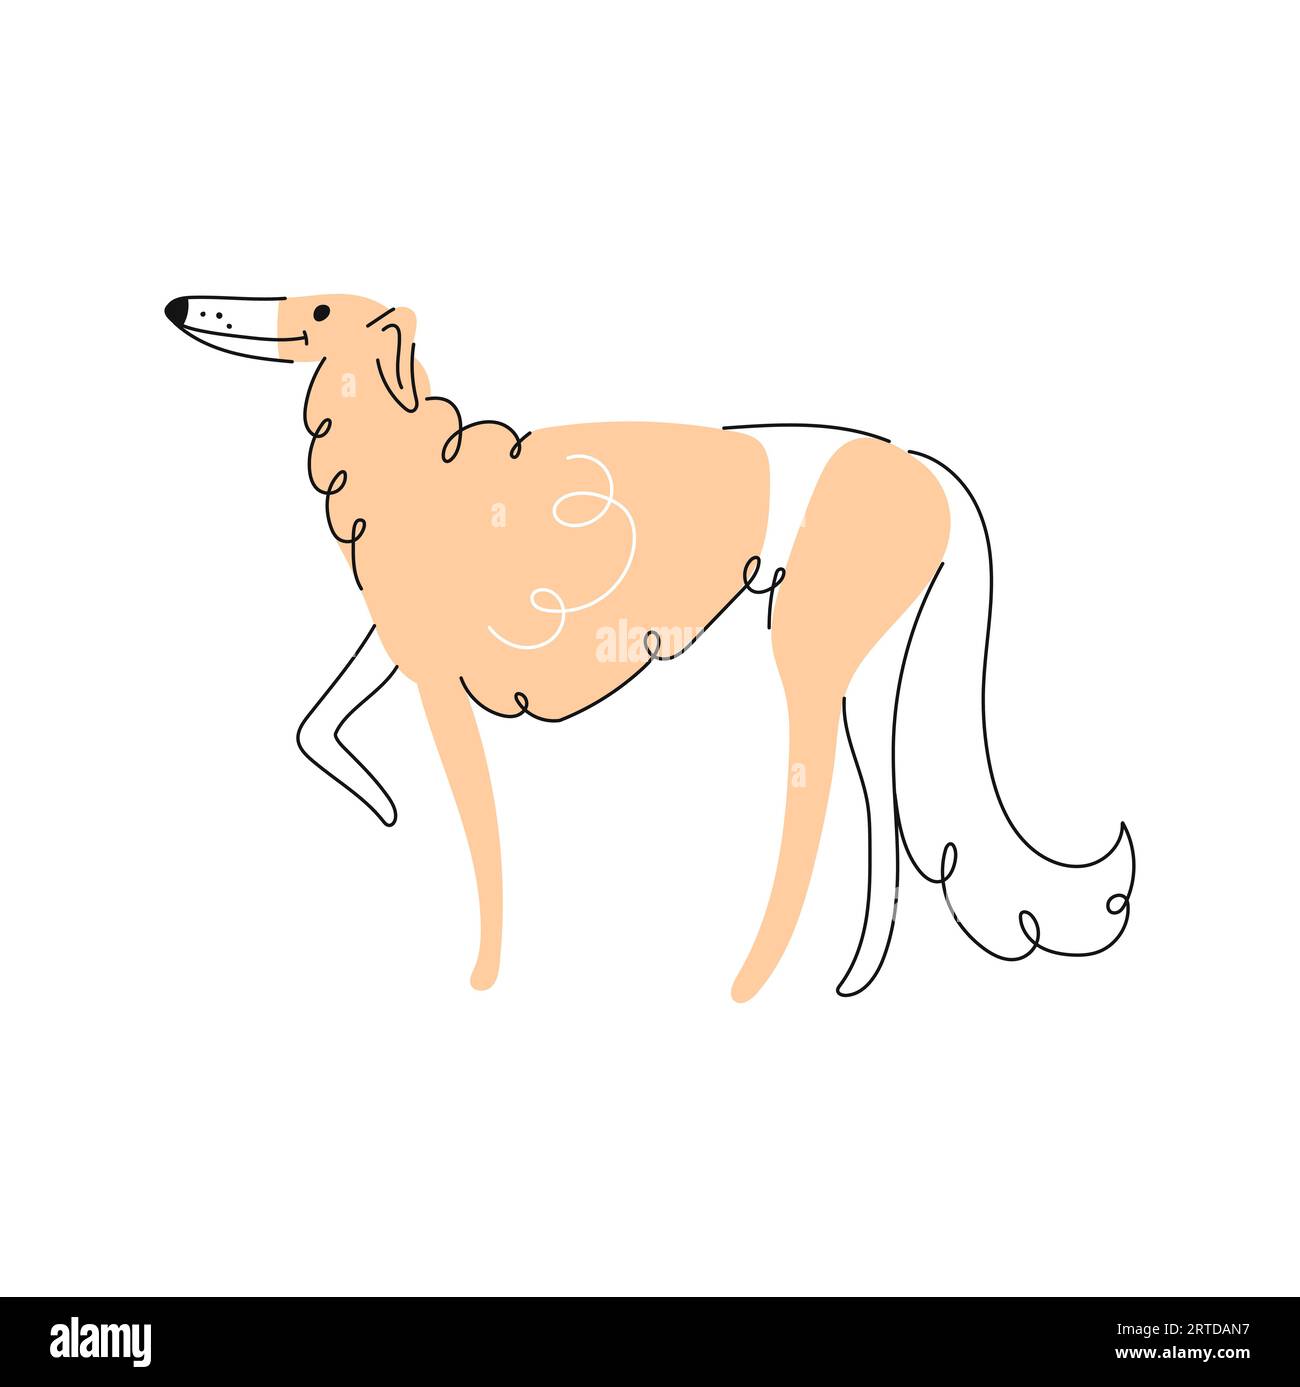 Chien de chien de chien afghan doodle, personnage de chiot de bande dessinée. Vecteur Borzoi chiot drôle animal de compagnie, souriant drôle canin adorable portrait de chien Illustration de Vecteur